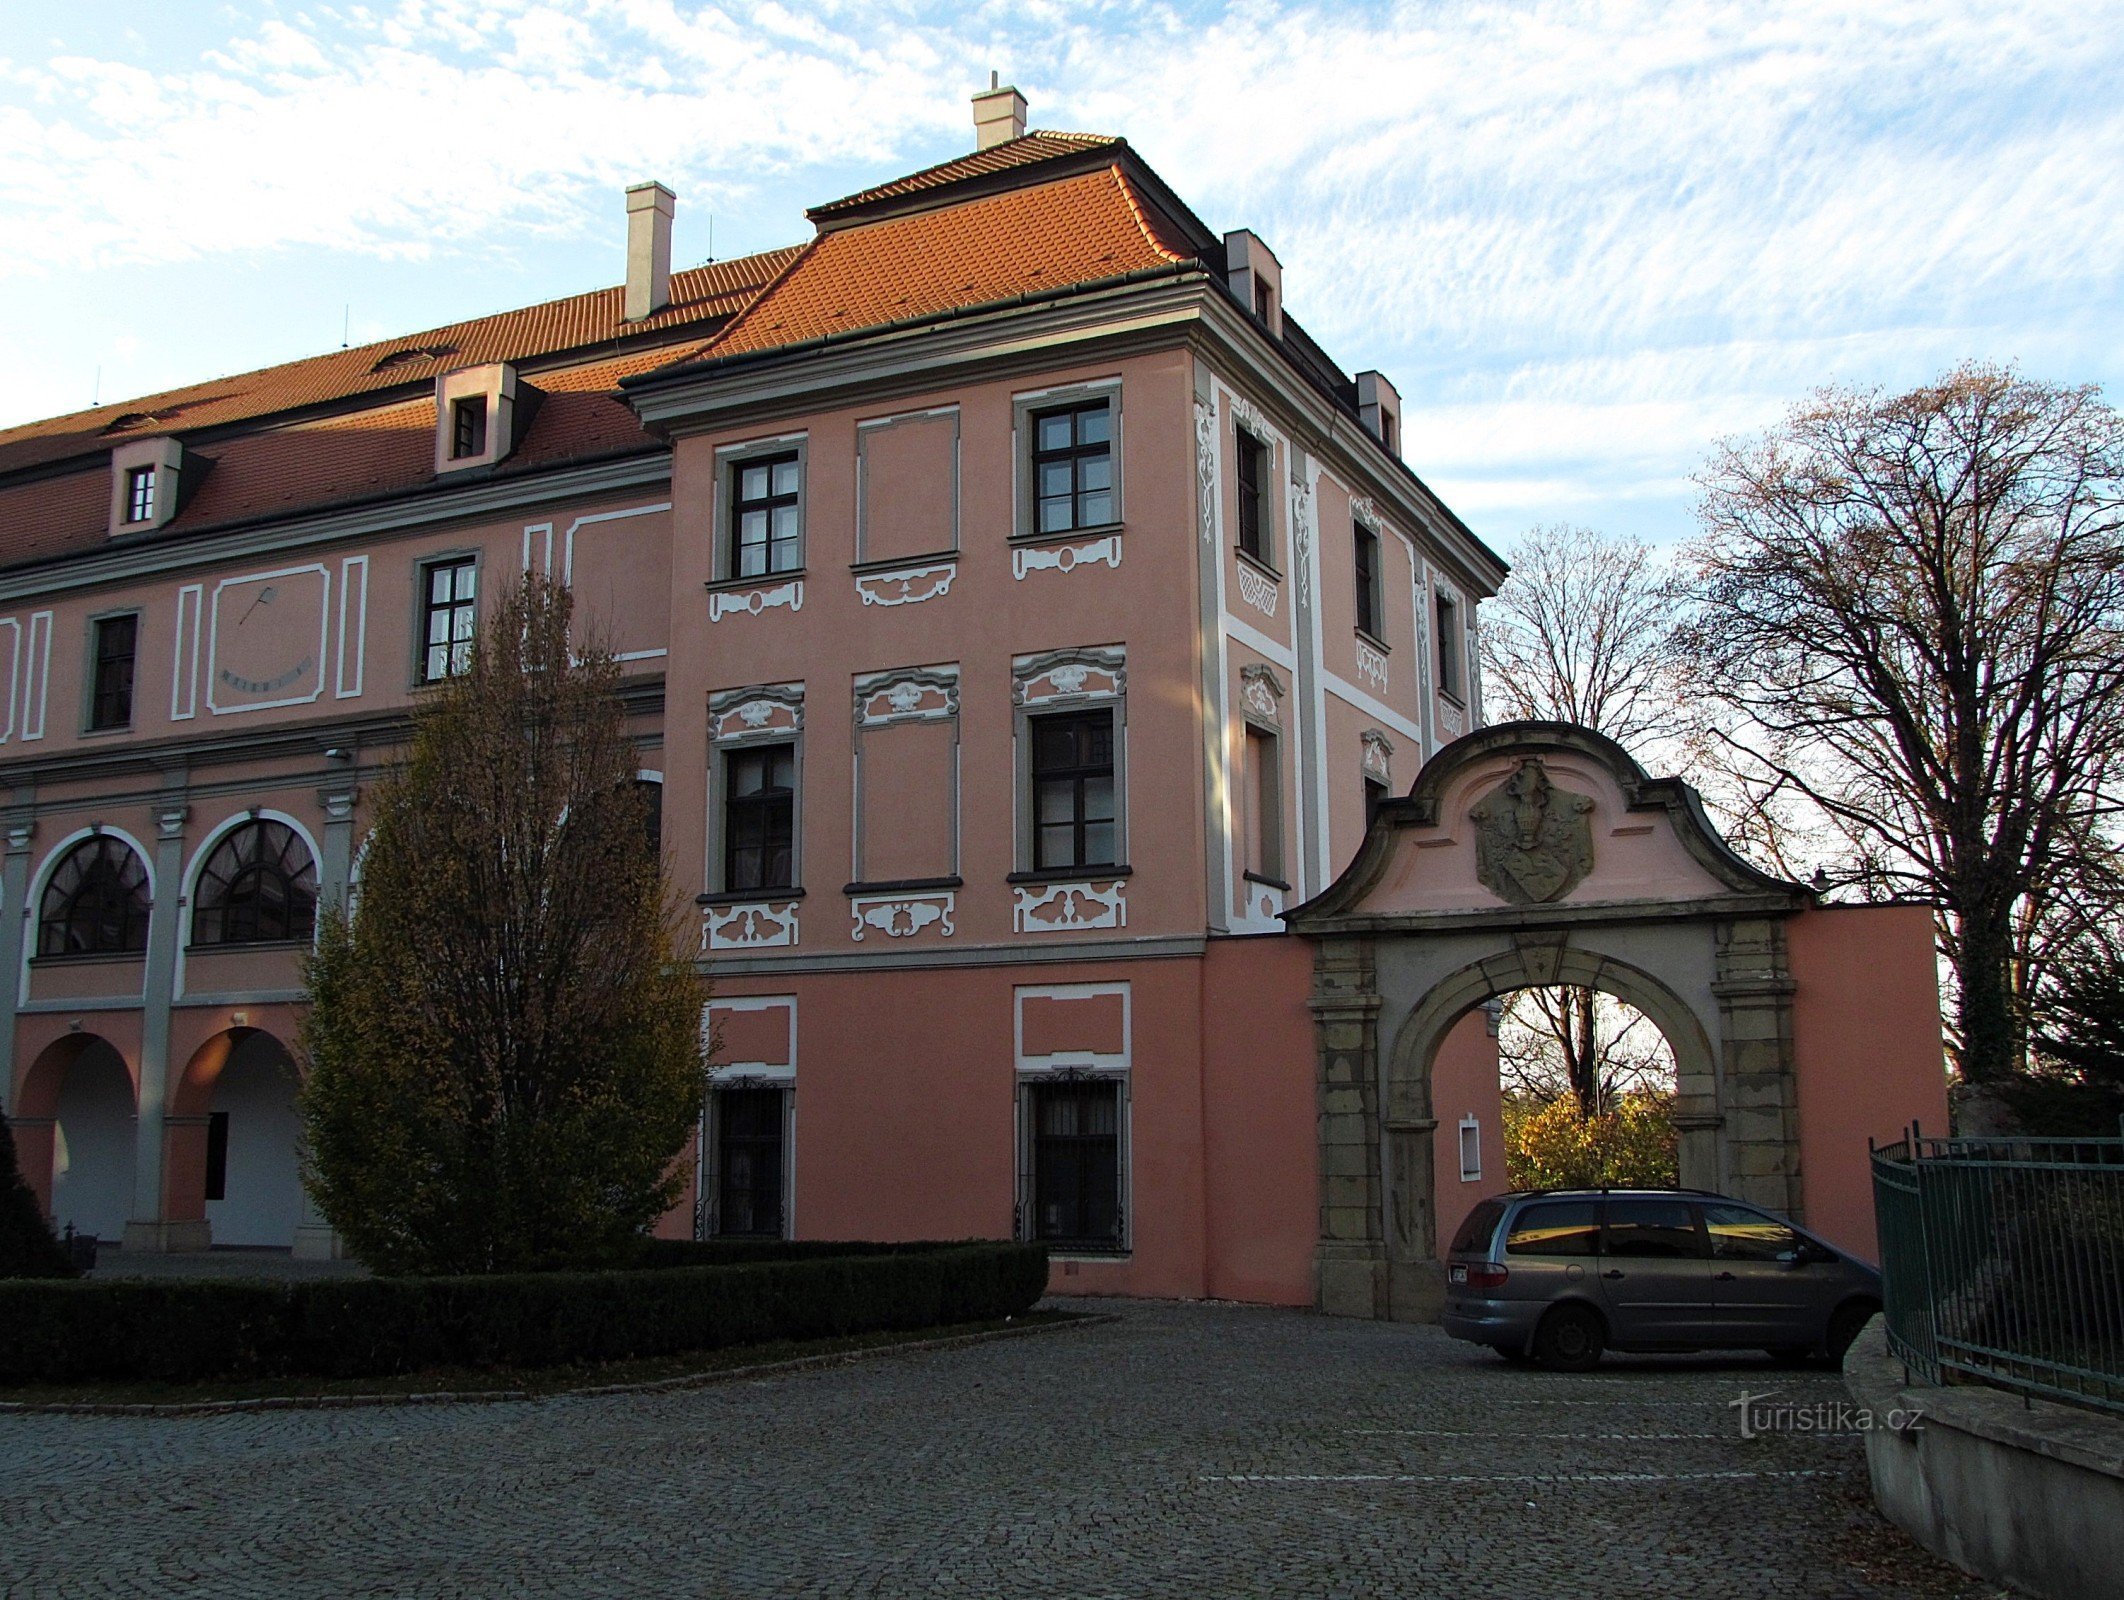 Valašské Meziříčí - dvorac Žerotín u središtu grada